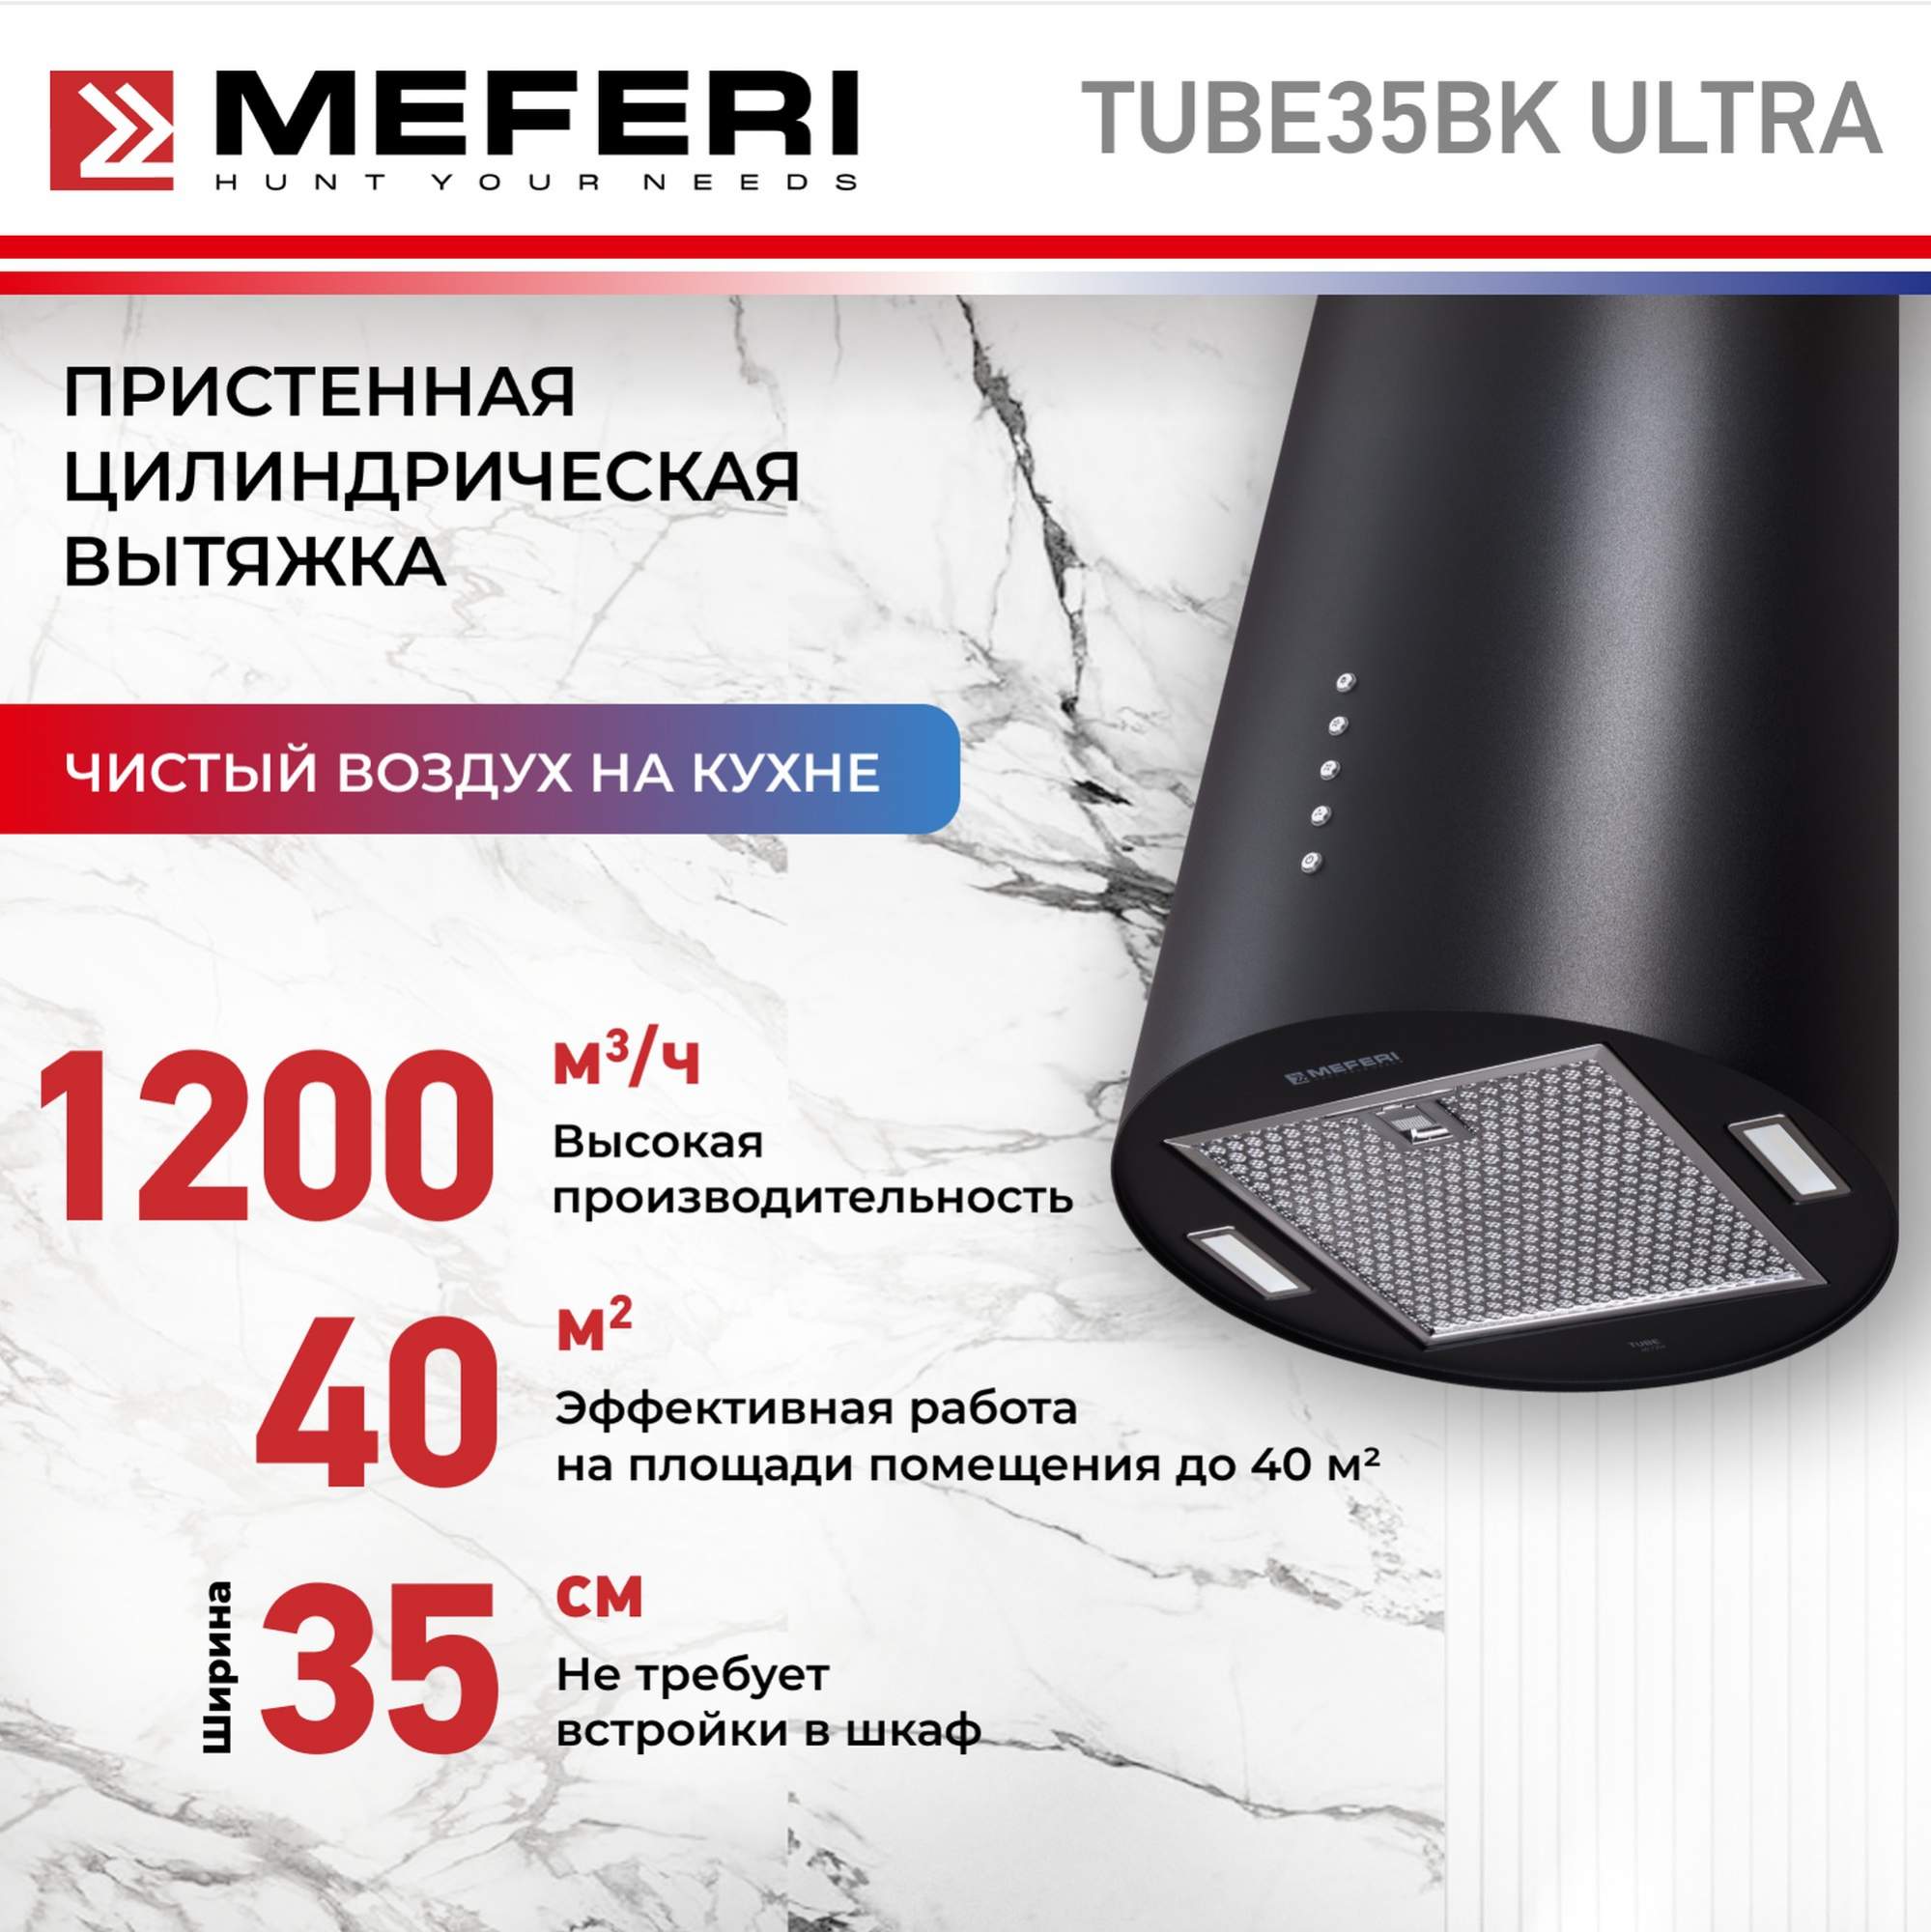 Цилиндрическая вытяжка Meferi TUBE35BK ULTRA смарт часы хороший выбор h12 ultra серебристый 2344564442